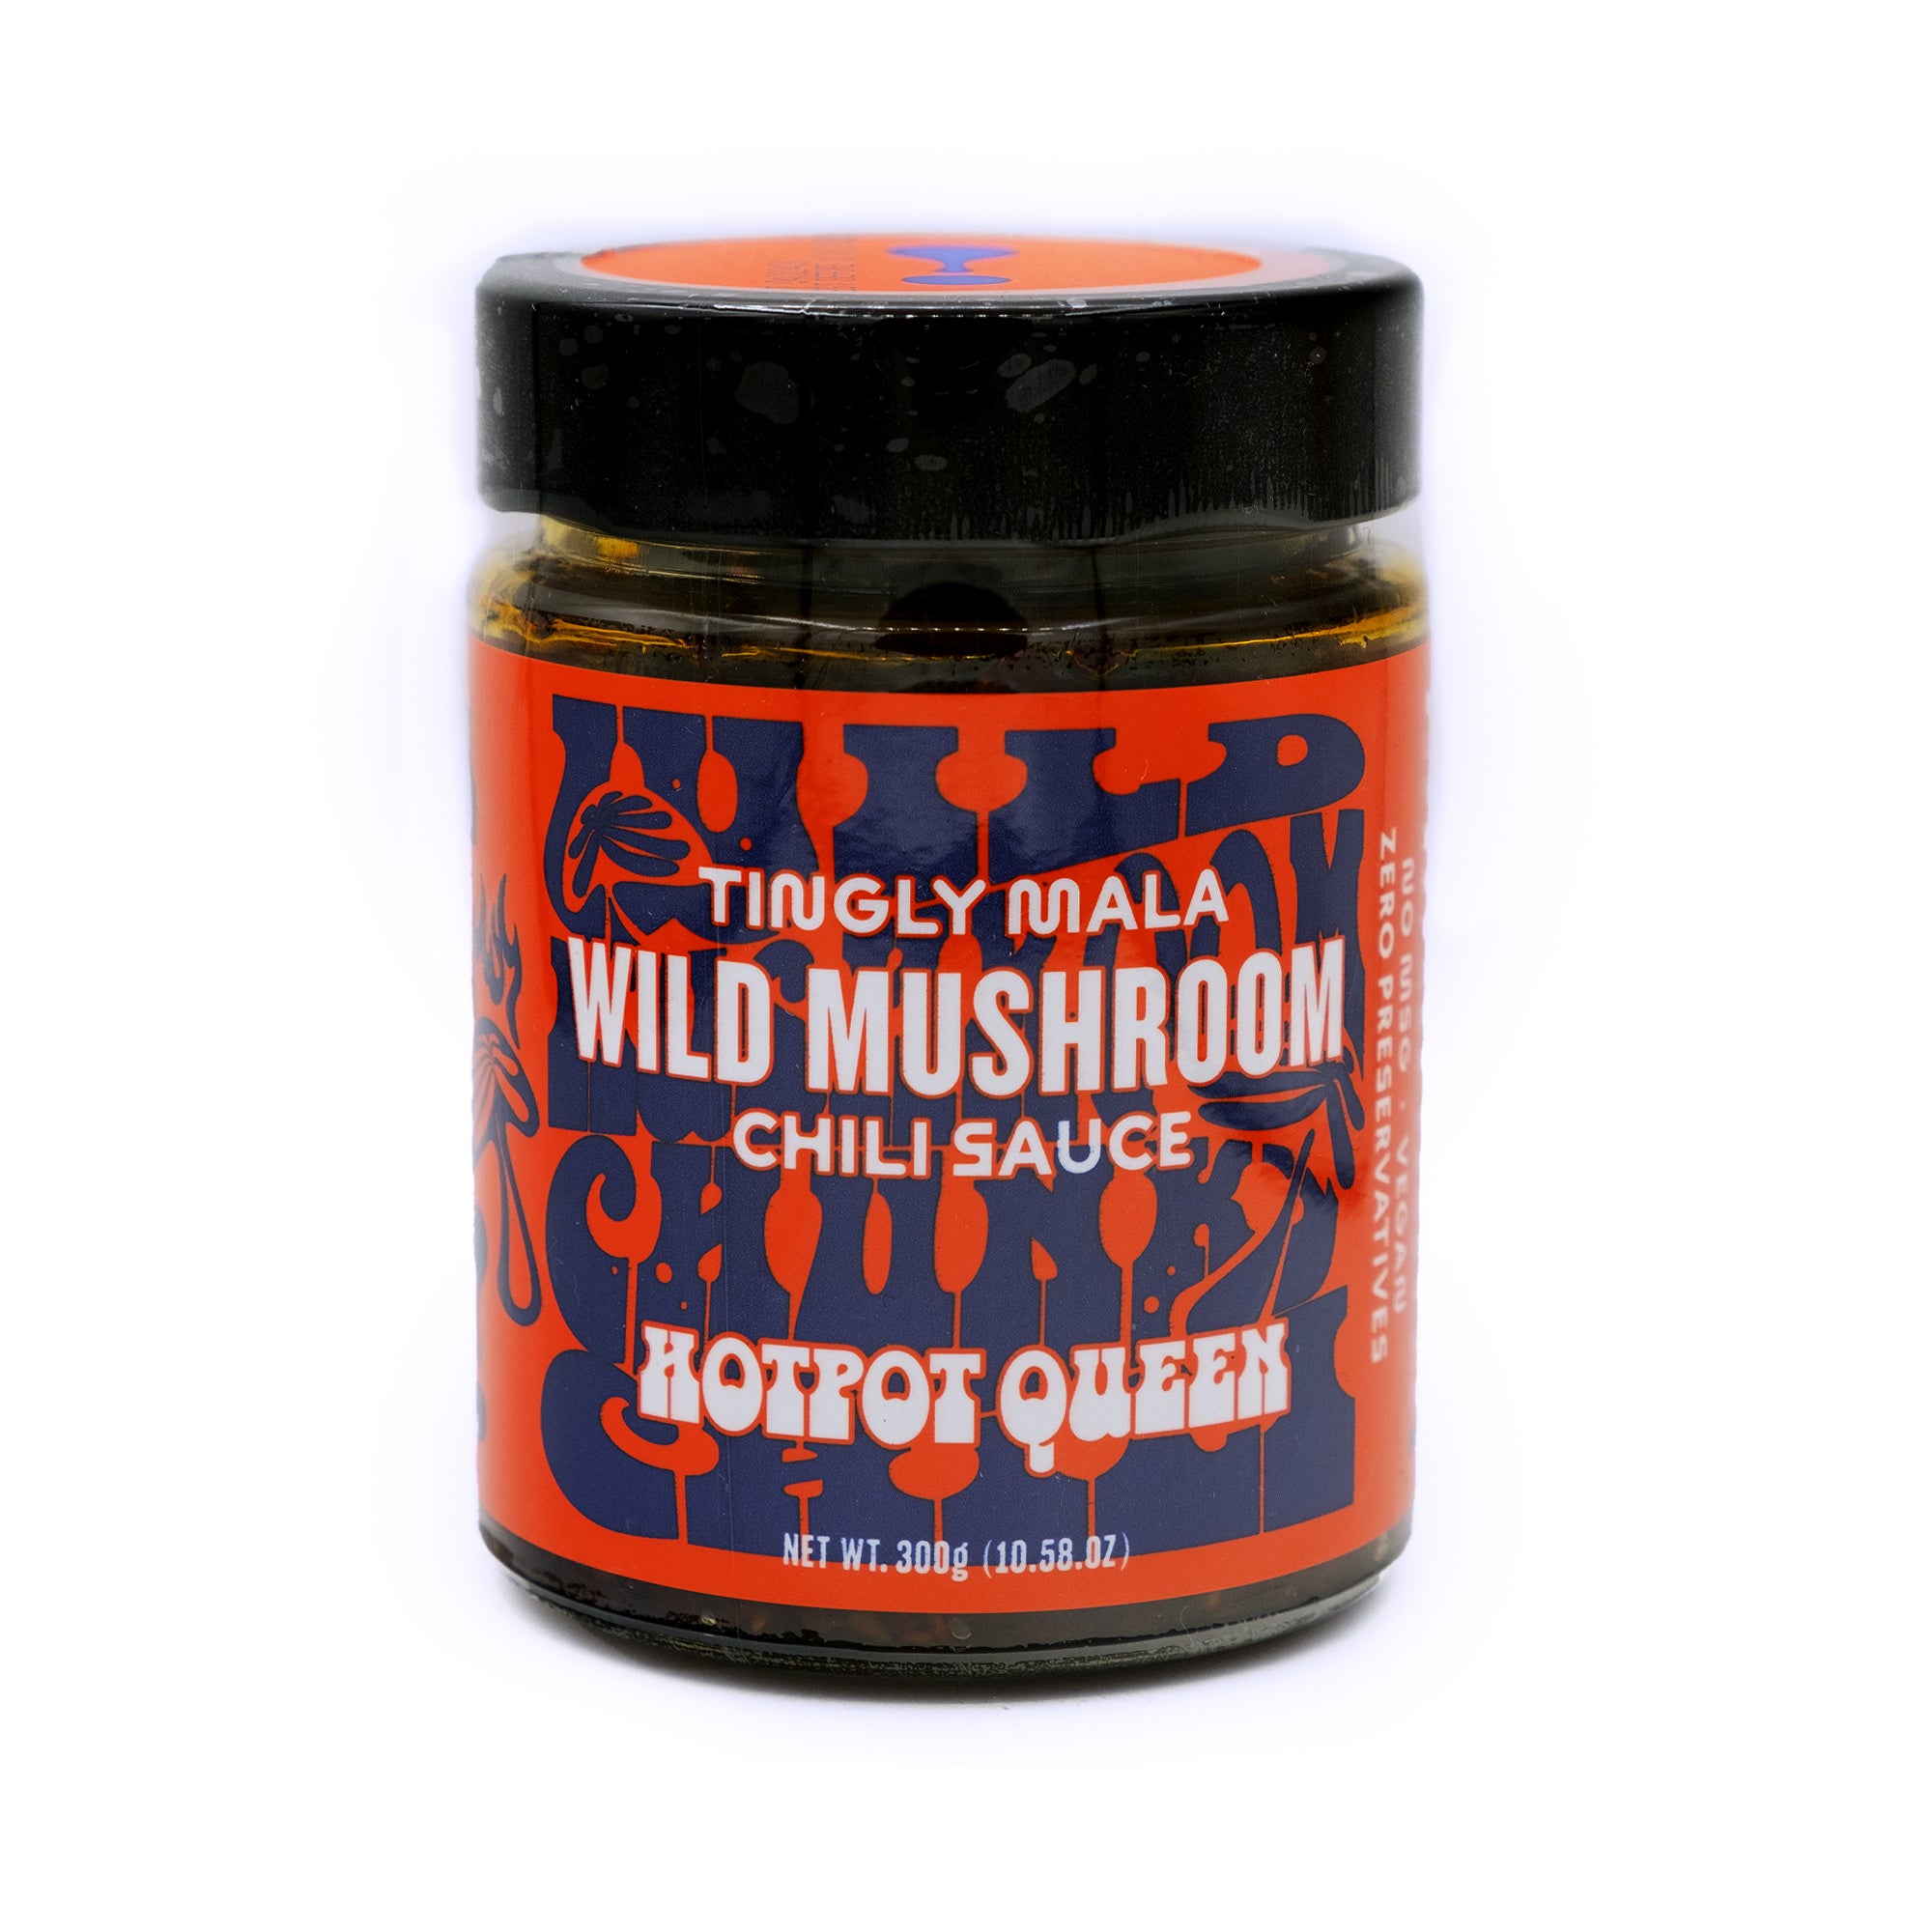 Wild Mushroom Chili Sauce